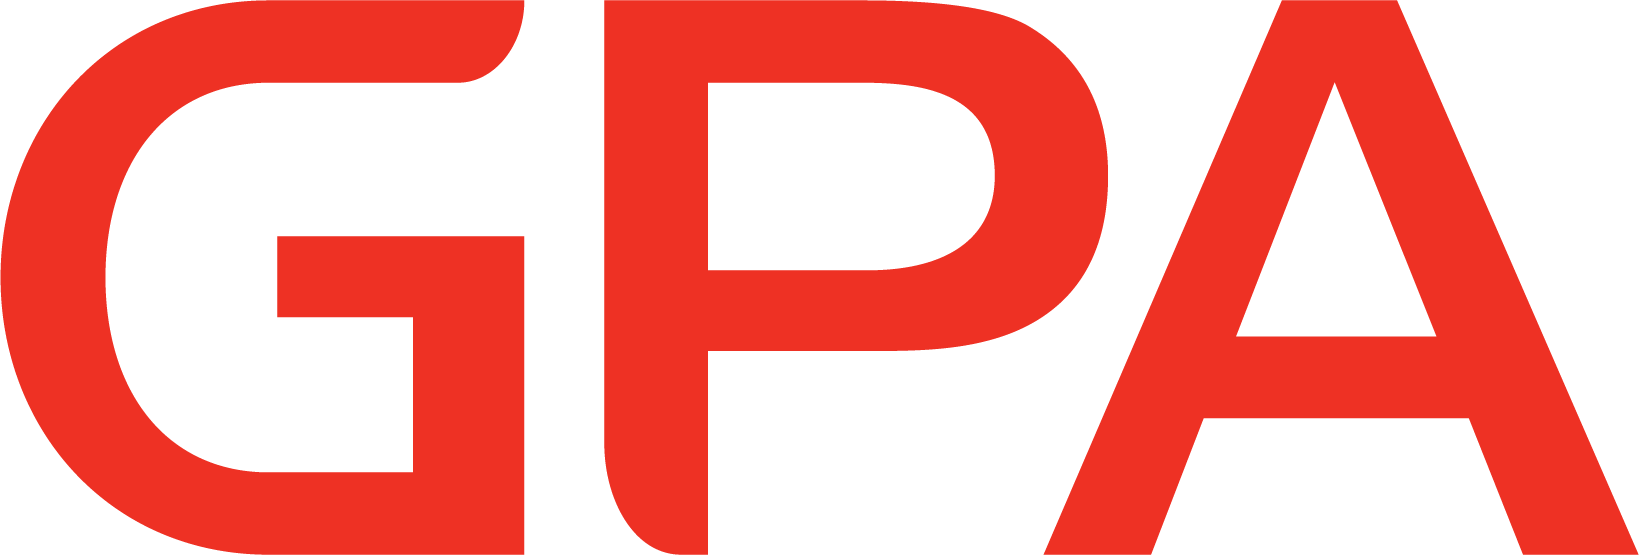 GPA_Logo_RBG.png